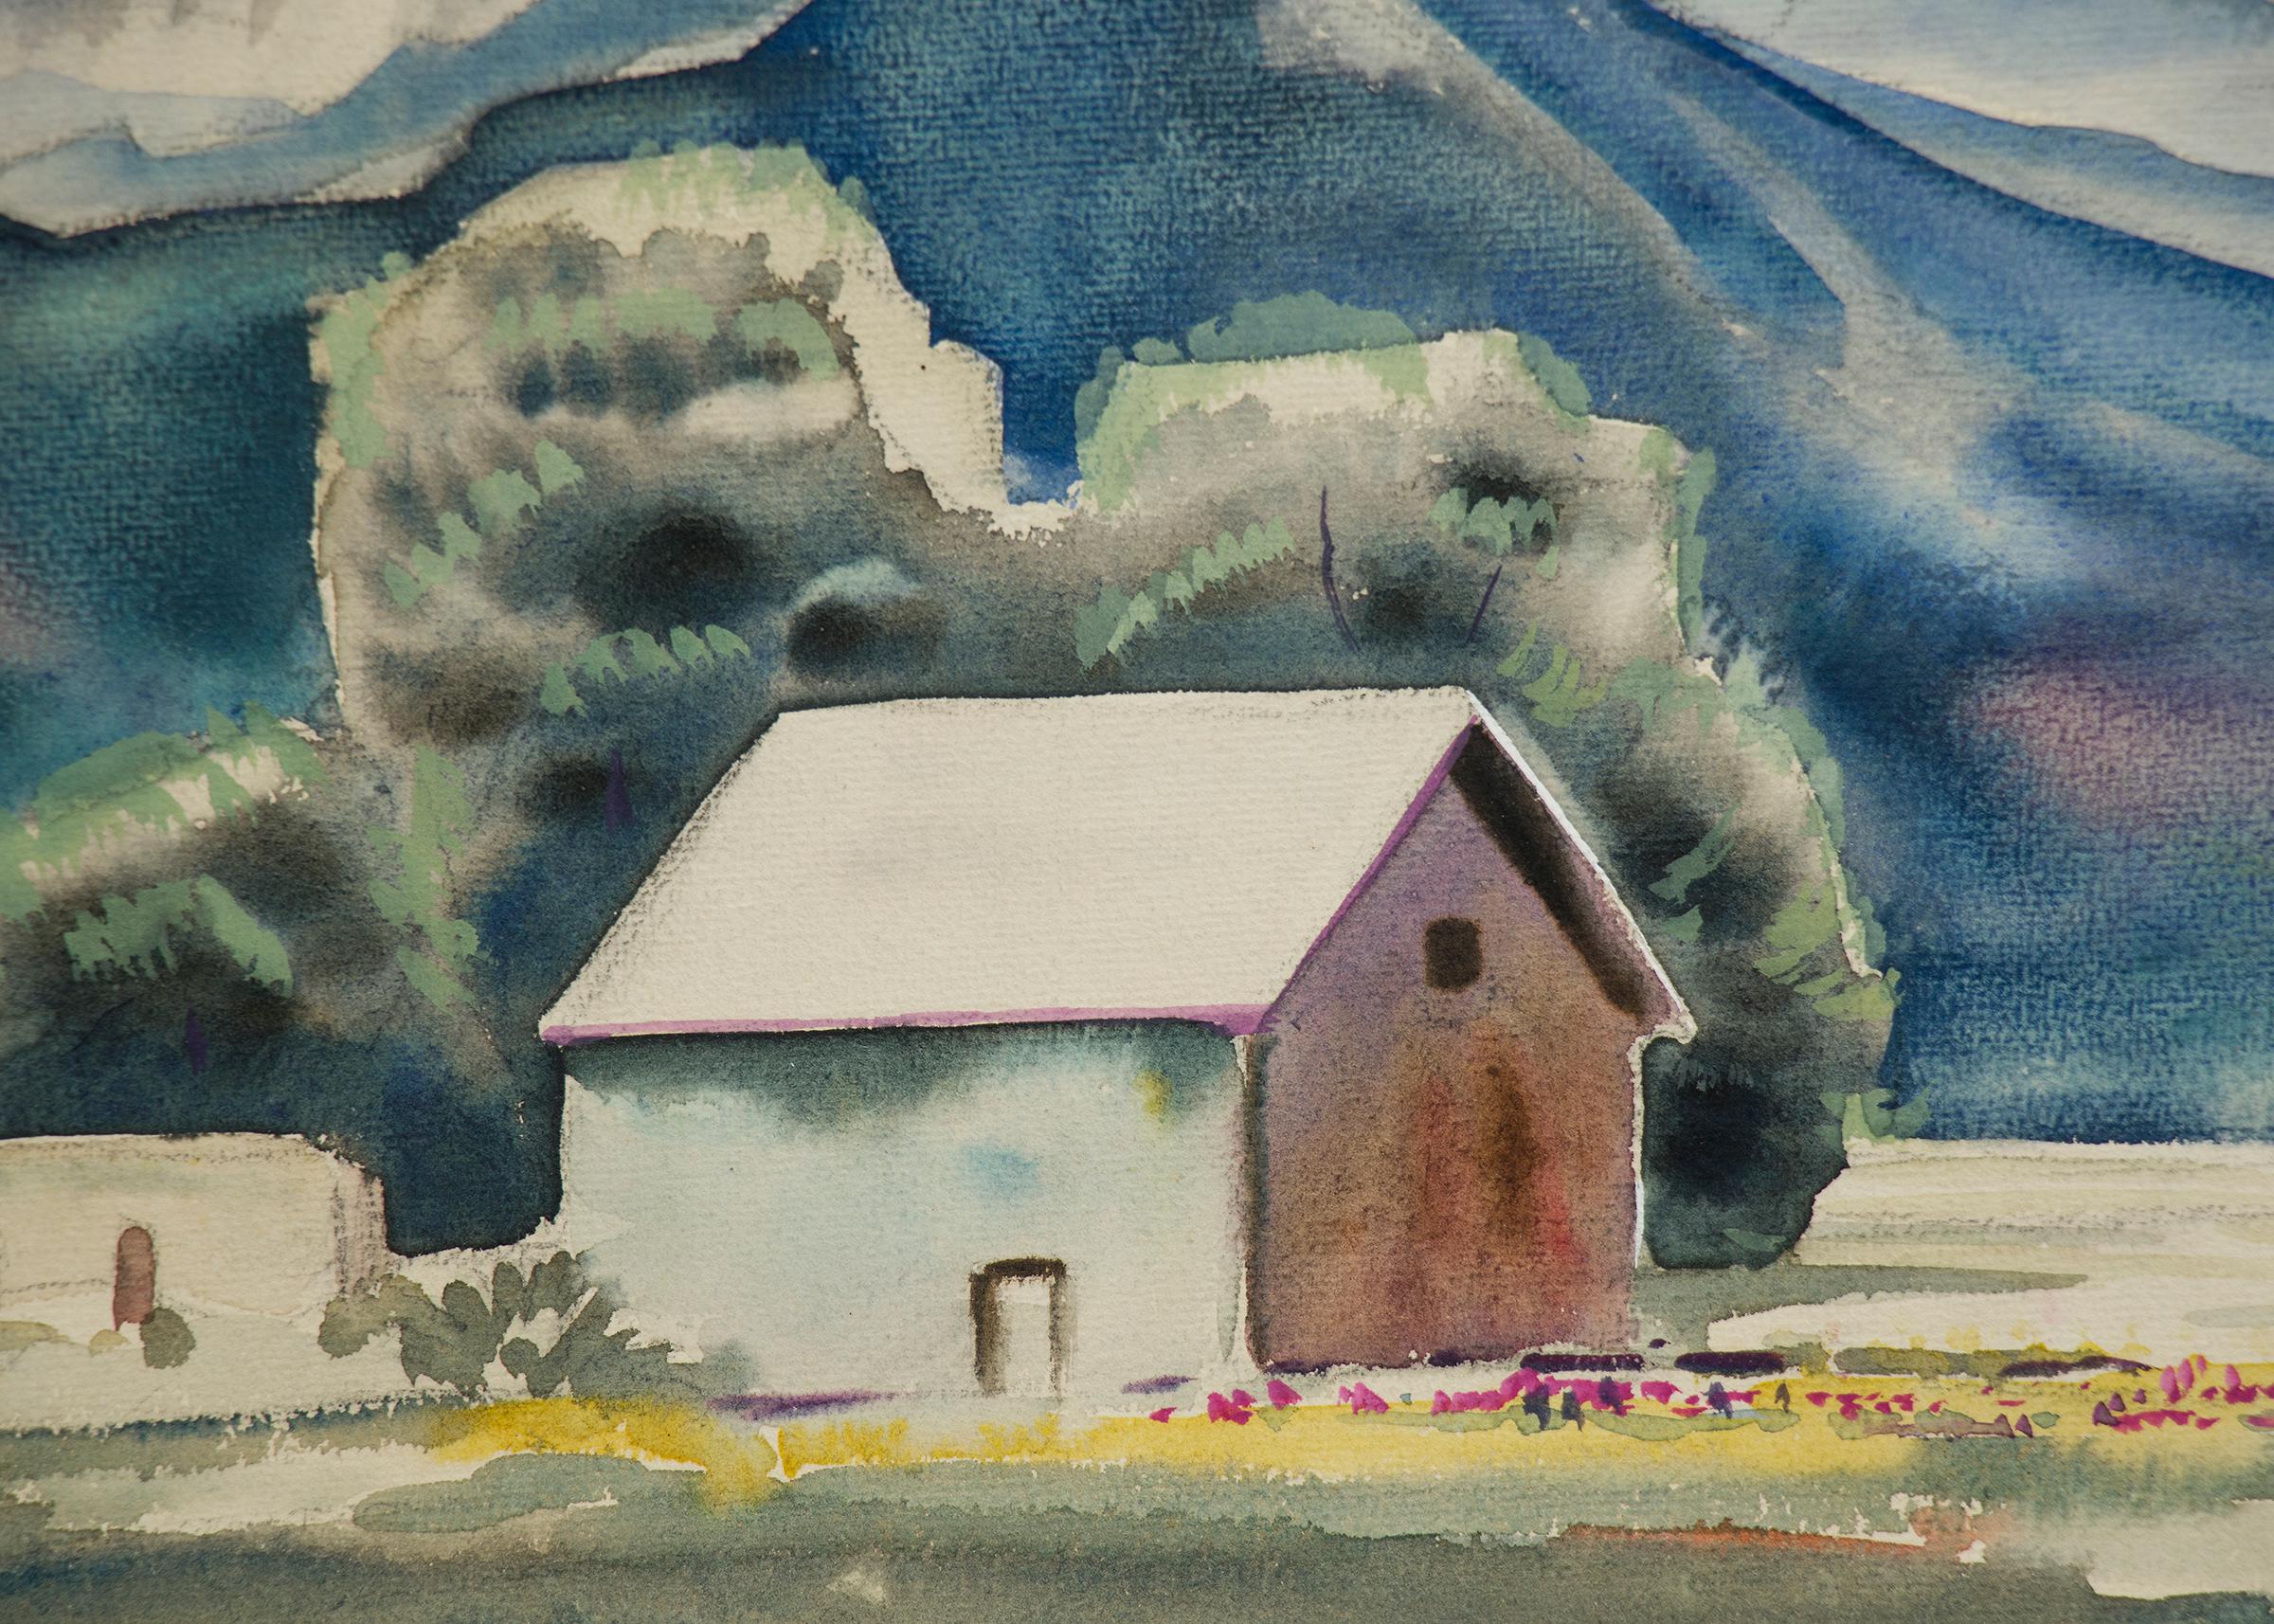 Originales modernistisches Aquarell des Sangre de Cristo-Gebirges in Colorado von Alfred Wands (1904-1998).  Ein Bauernhof im Vordergrund mit Bergen und Himmel in dominanten Blau-, Grün-, Weiß-, Gelb-, Violett- und Rot-Tönen.  Präsentiert in einem